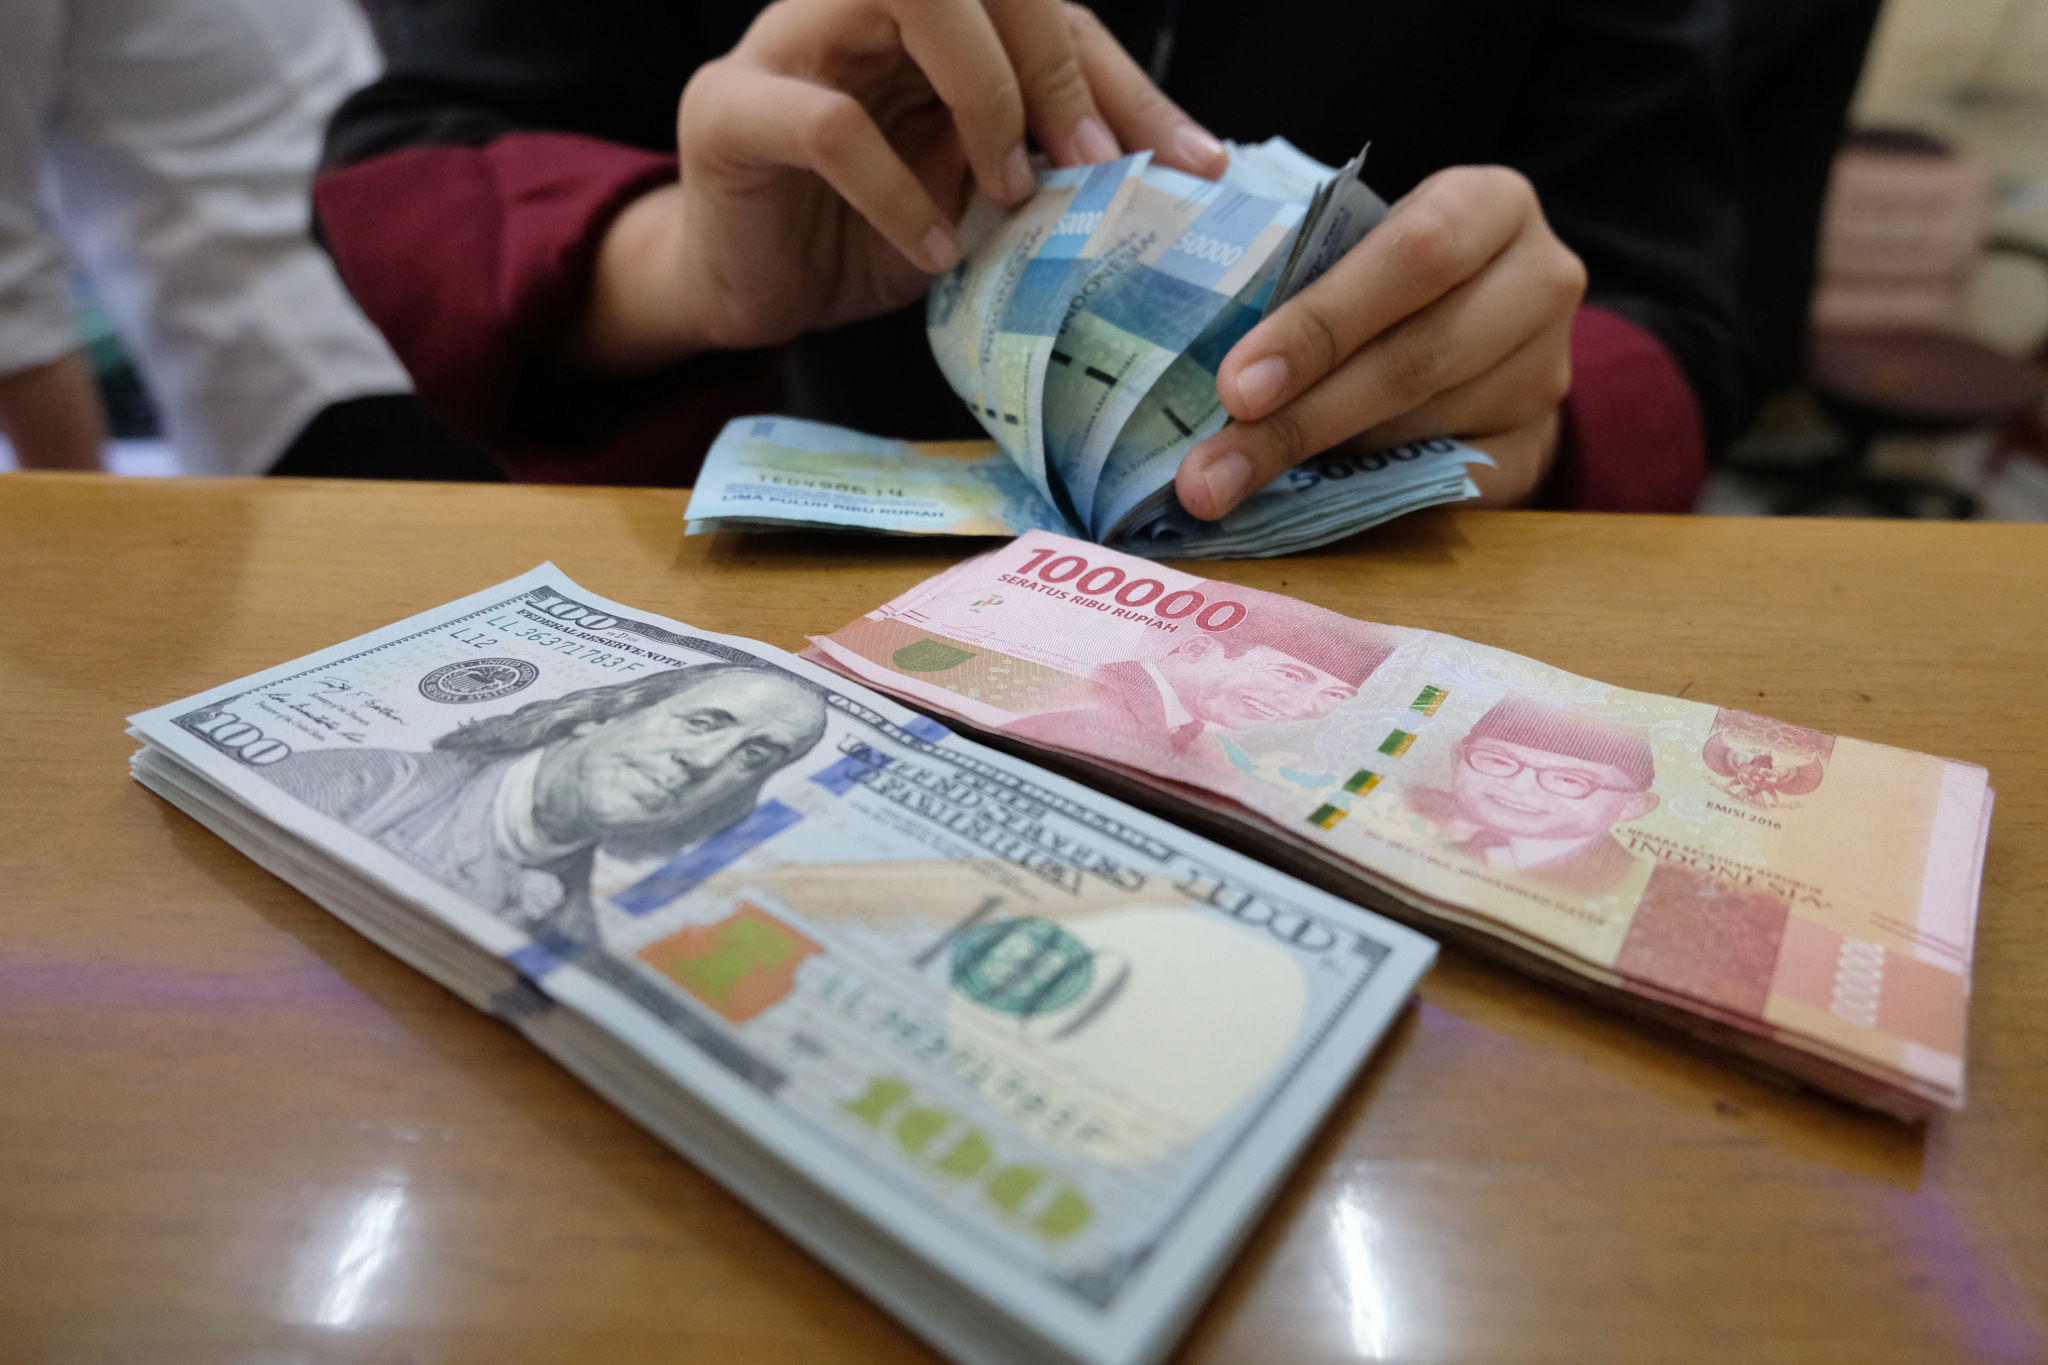 <p>Karyawan menghitung mata uang Rupiah di salah satu tempat penukaran uang atau Money Changer di kawasan Melawai, Jakarta, Senin, 9 November 2020. Foto: Ismail Pohan/TrenAsia</p>
